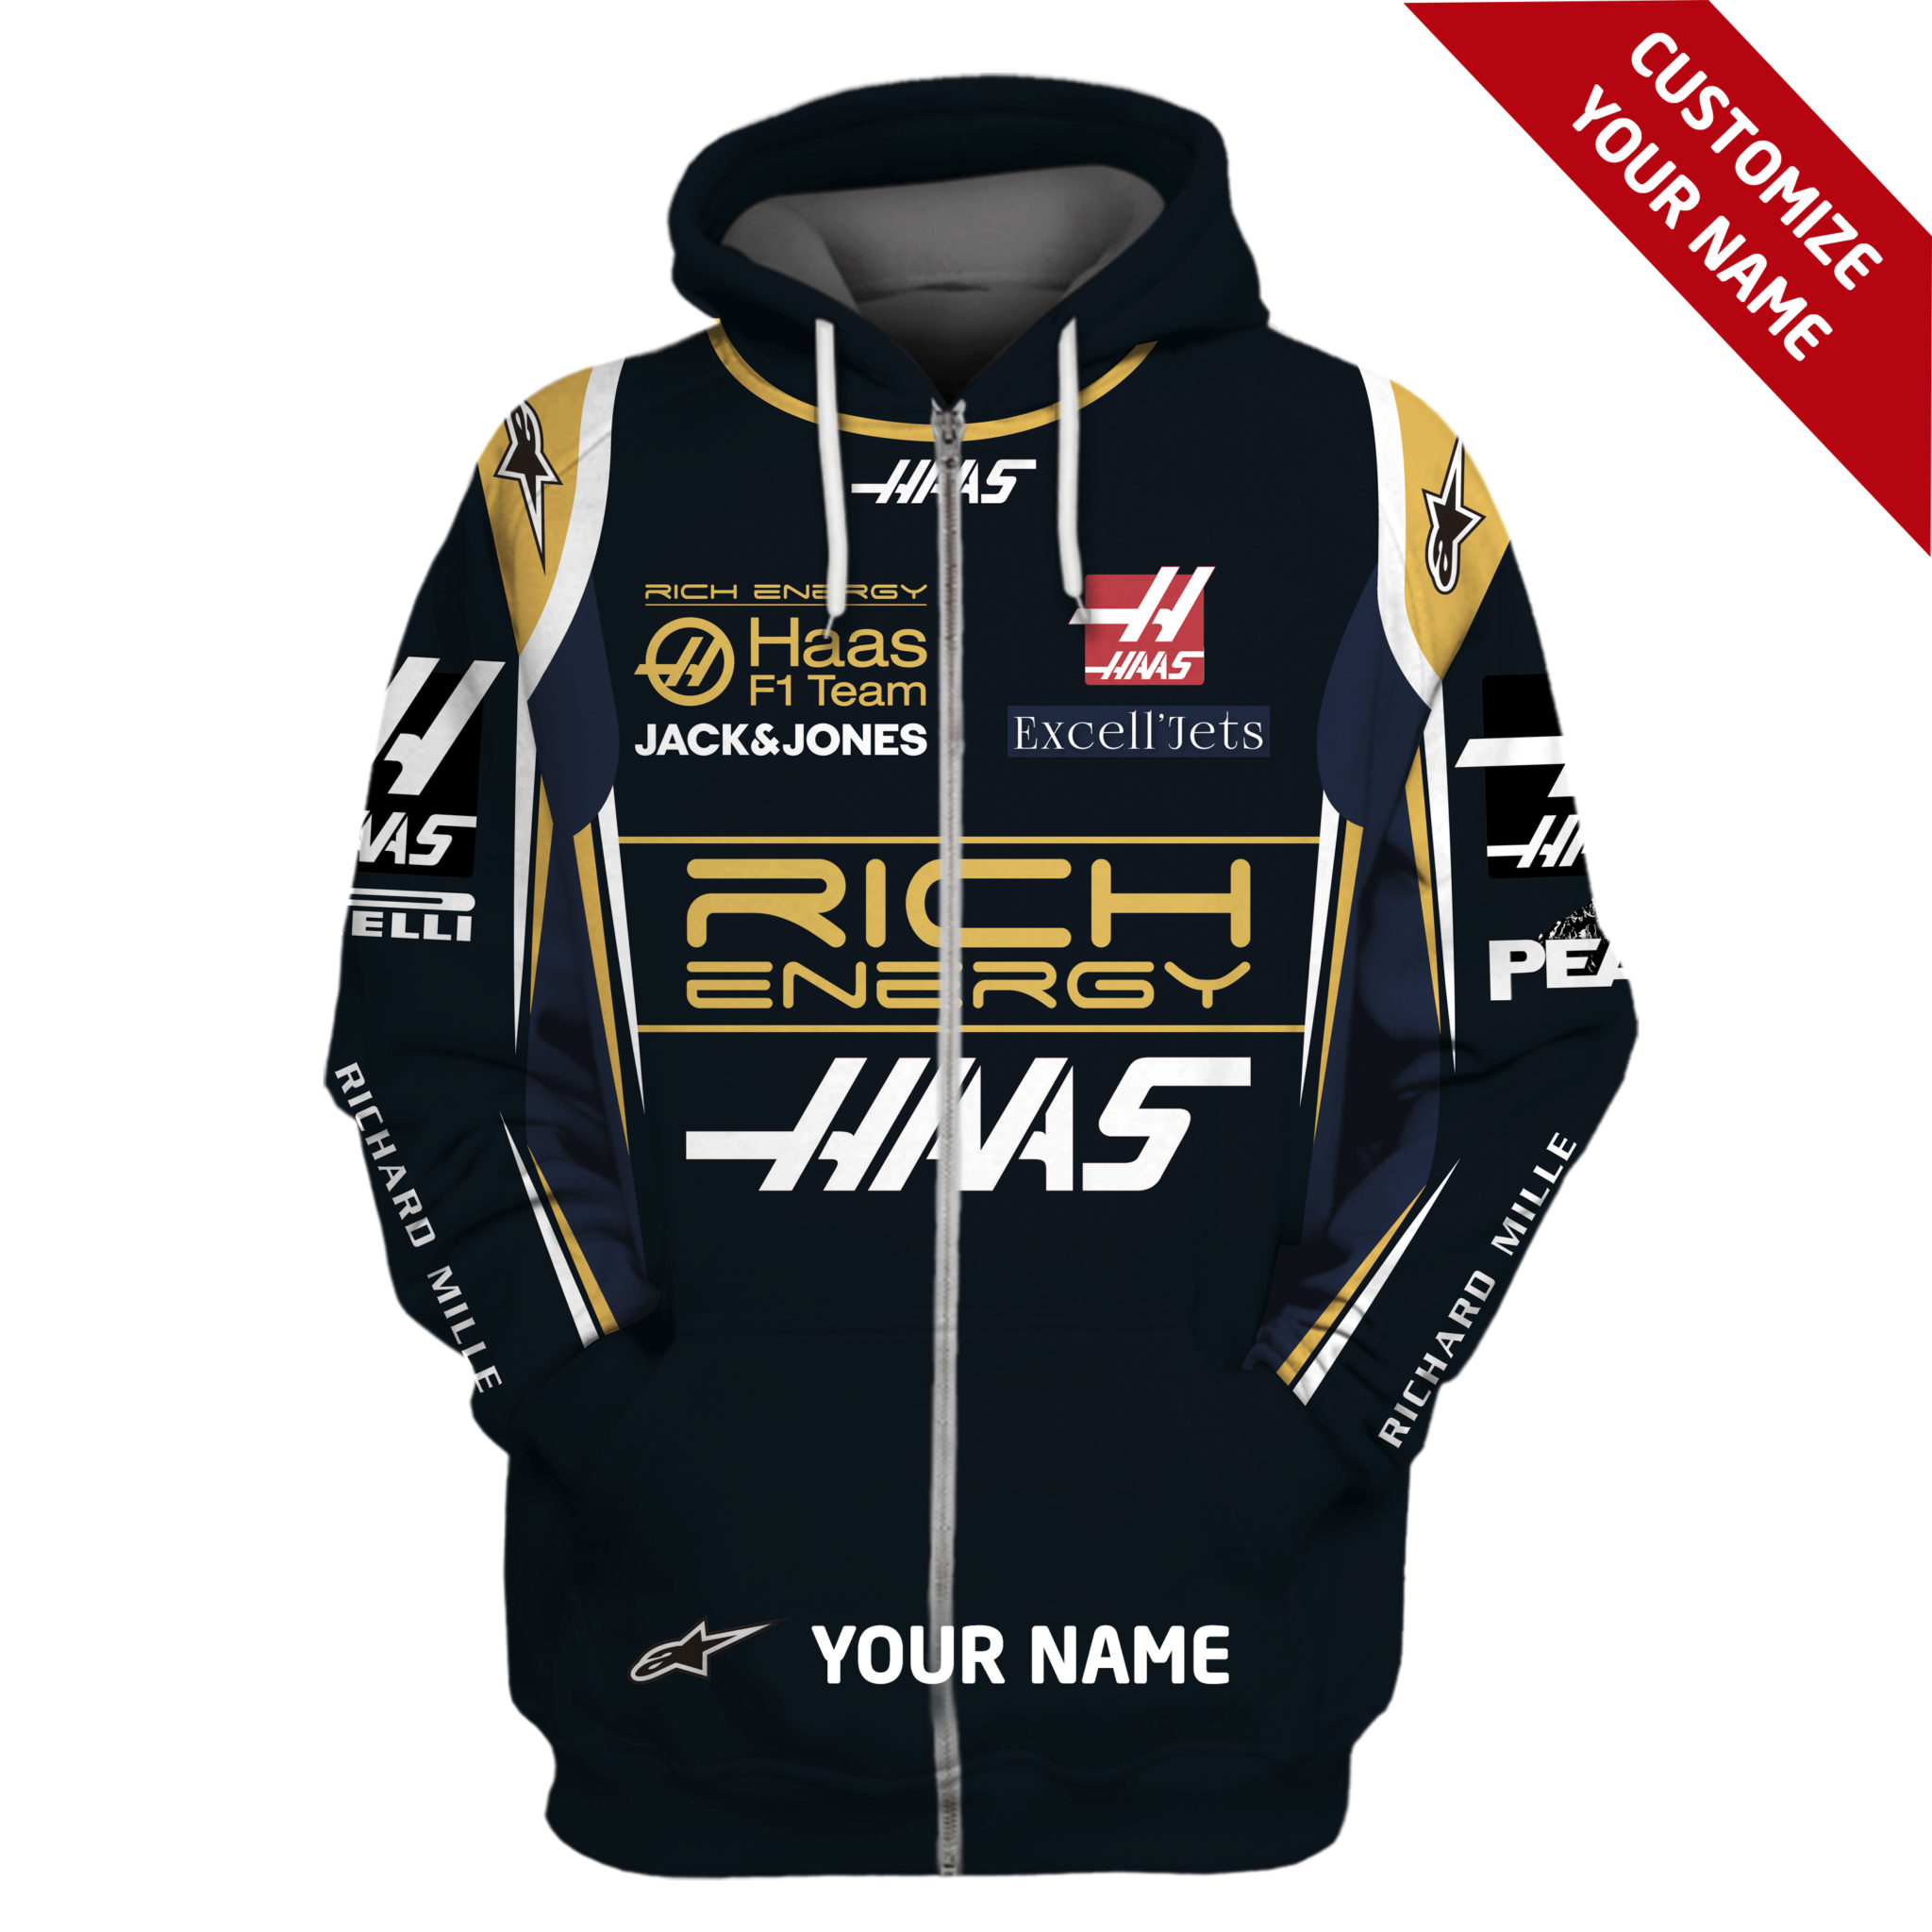 Kevin Magnussen, Romain Grosjean Hoodie Haas F1 Team Sweater Rich Energy, Haas F1 Team, Jack & Jones, Excl’Jets, Richard Mille Personalized Hoodie